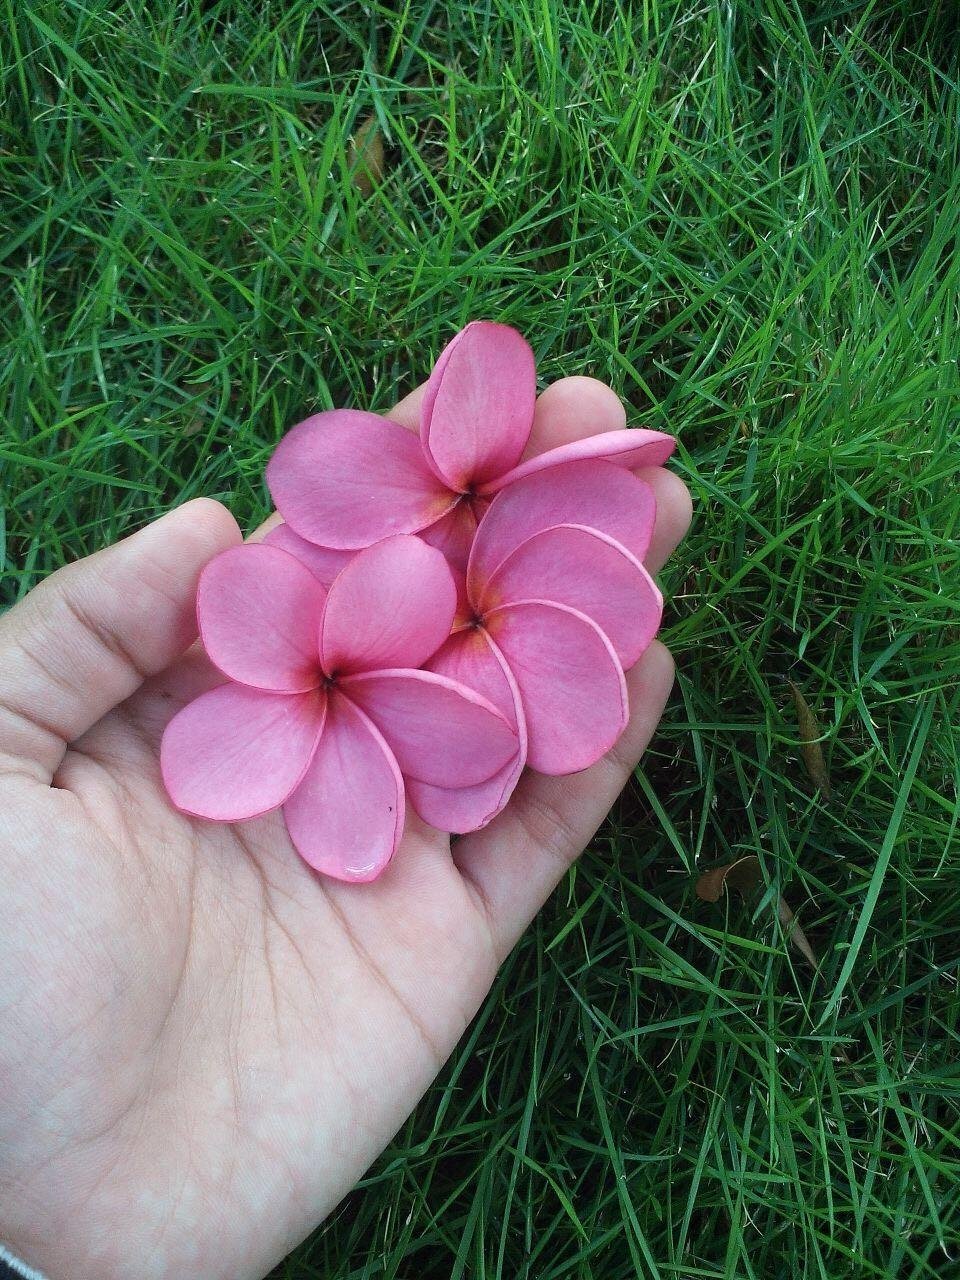 Wow 14+ Gambar Bunga Kamboja Merah Muda - Gambar Bunga HD